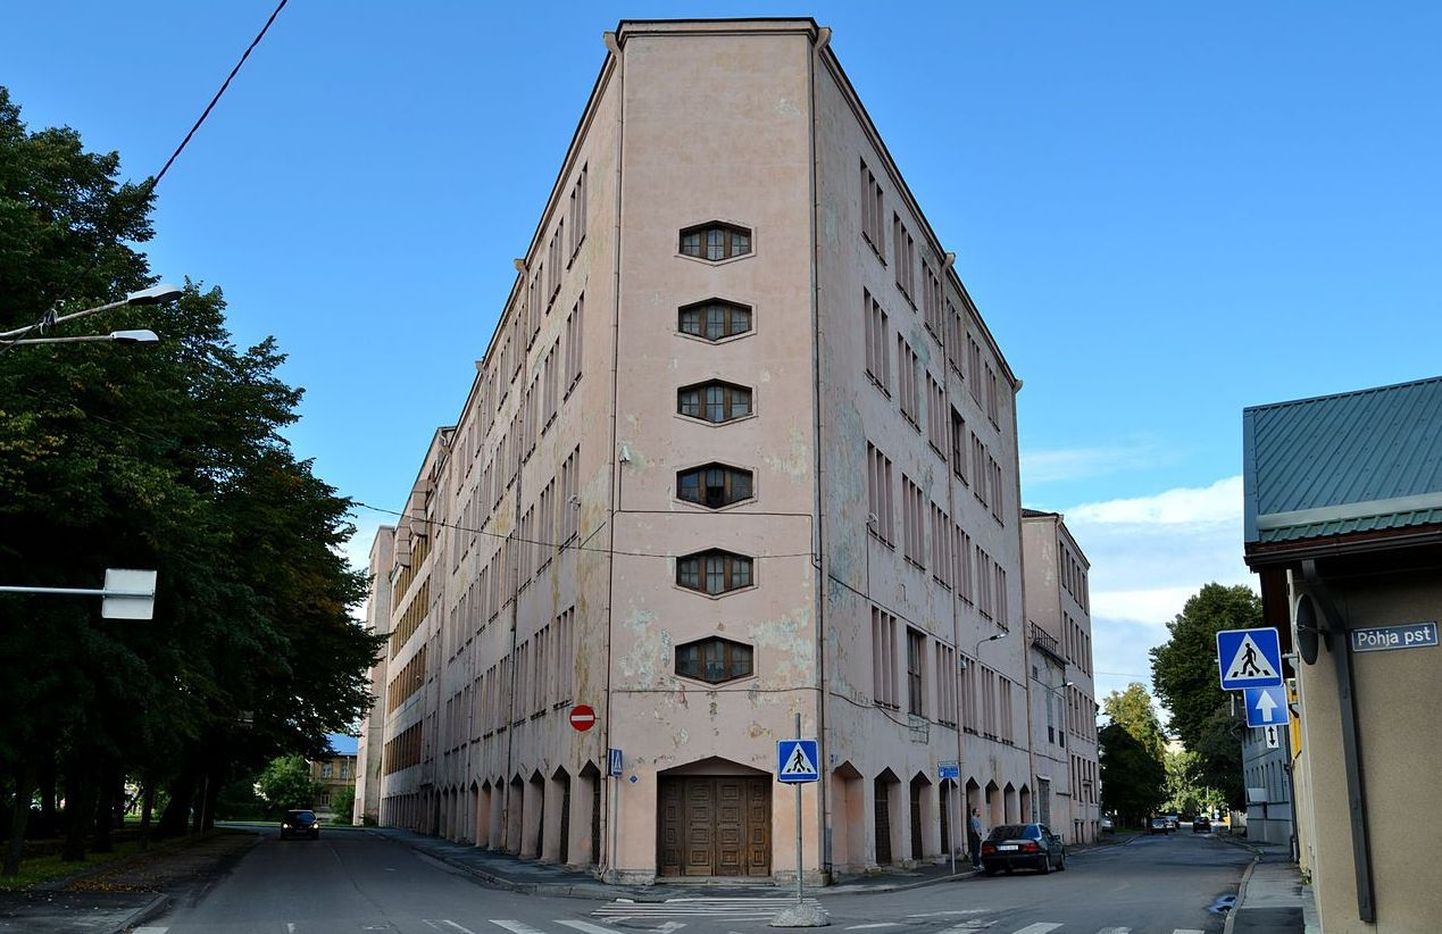 Tööstushoone Tallinnas Põhja puiesteel ja Kotzebue tänaval